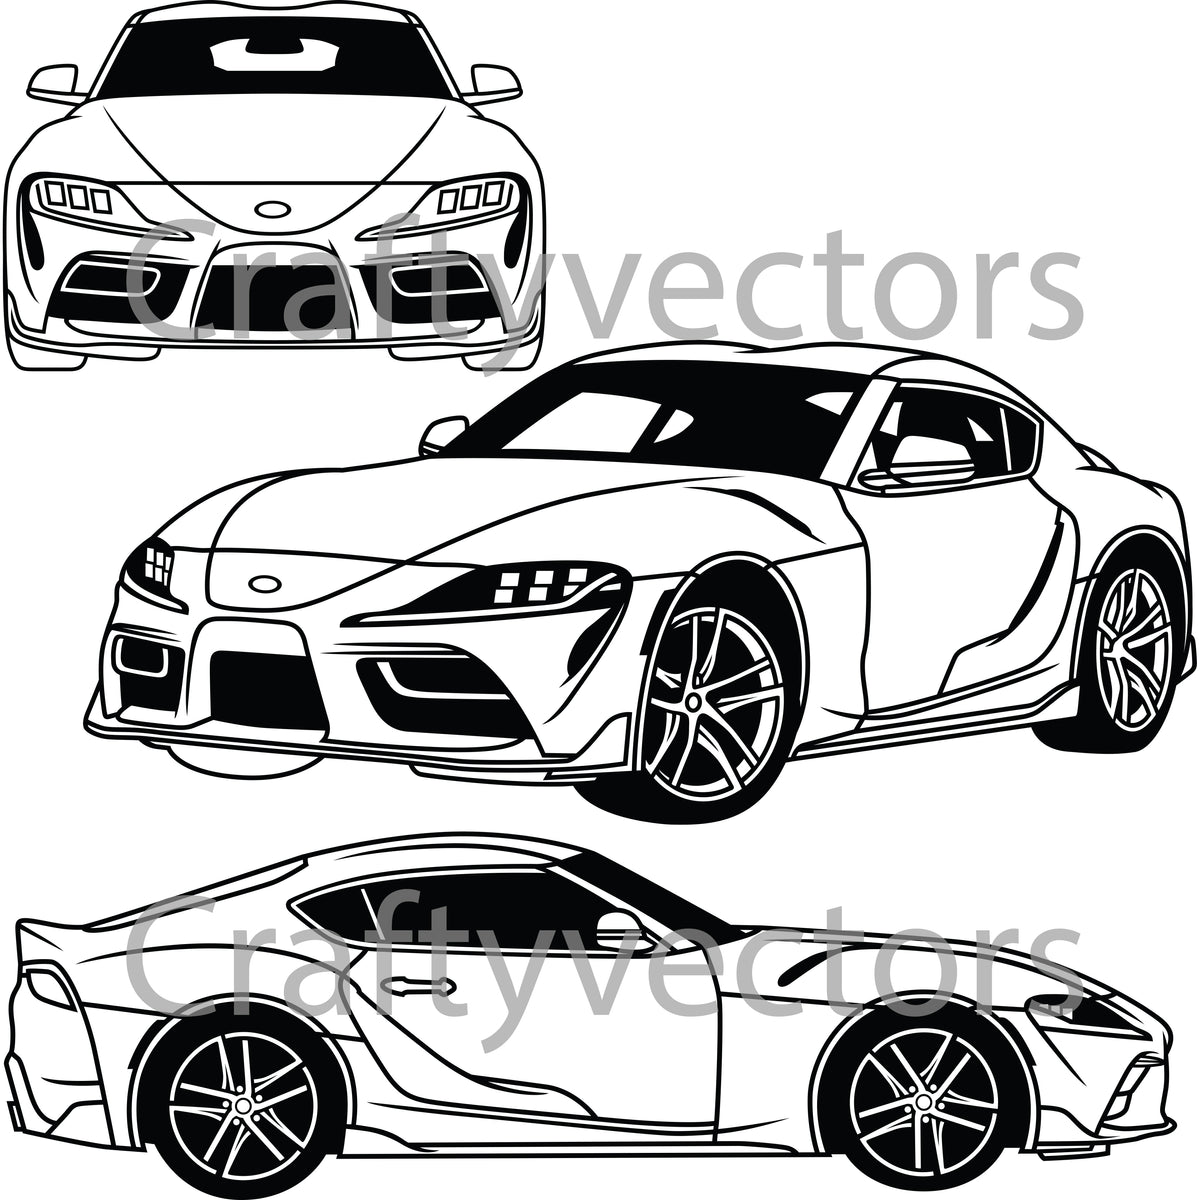 Toyota supra vector â crafty vectors